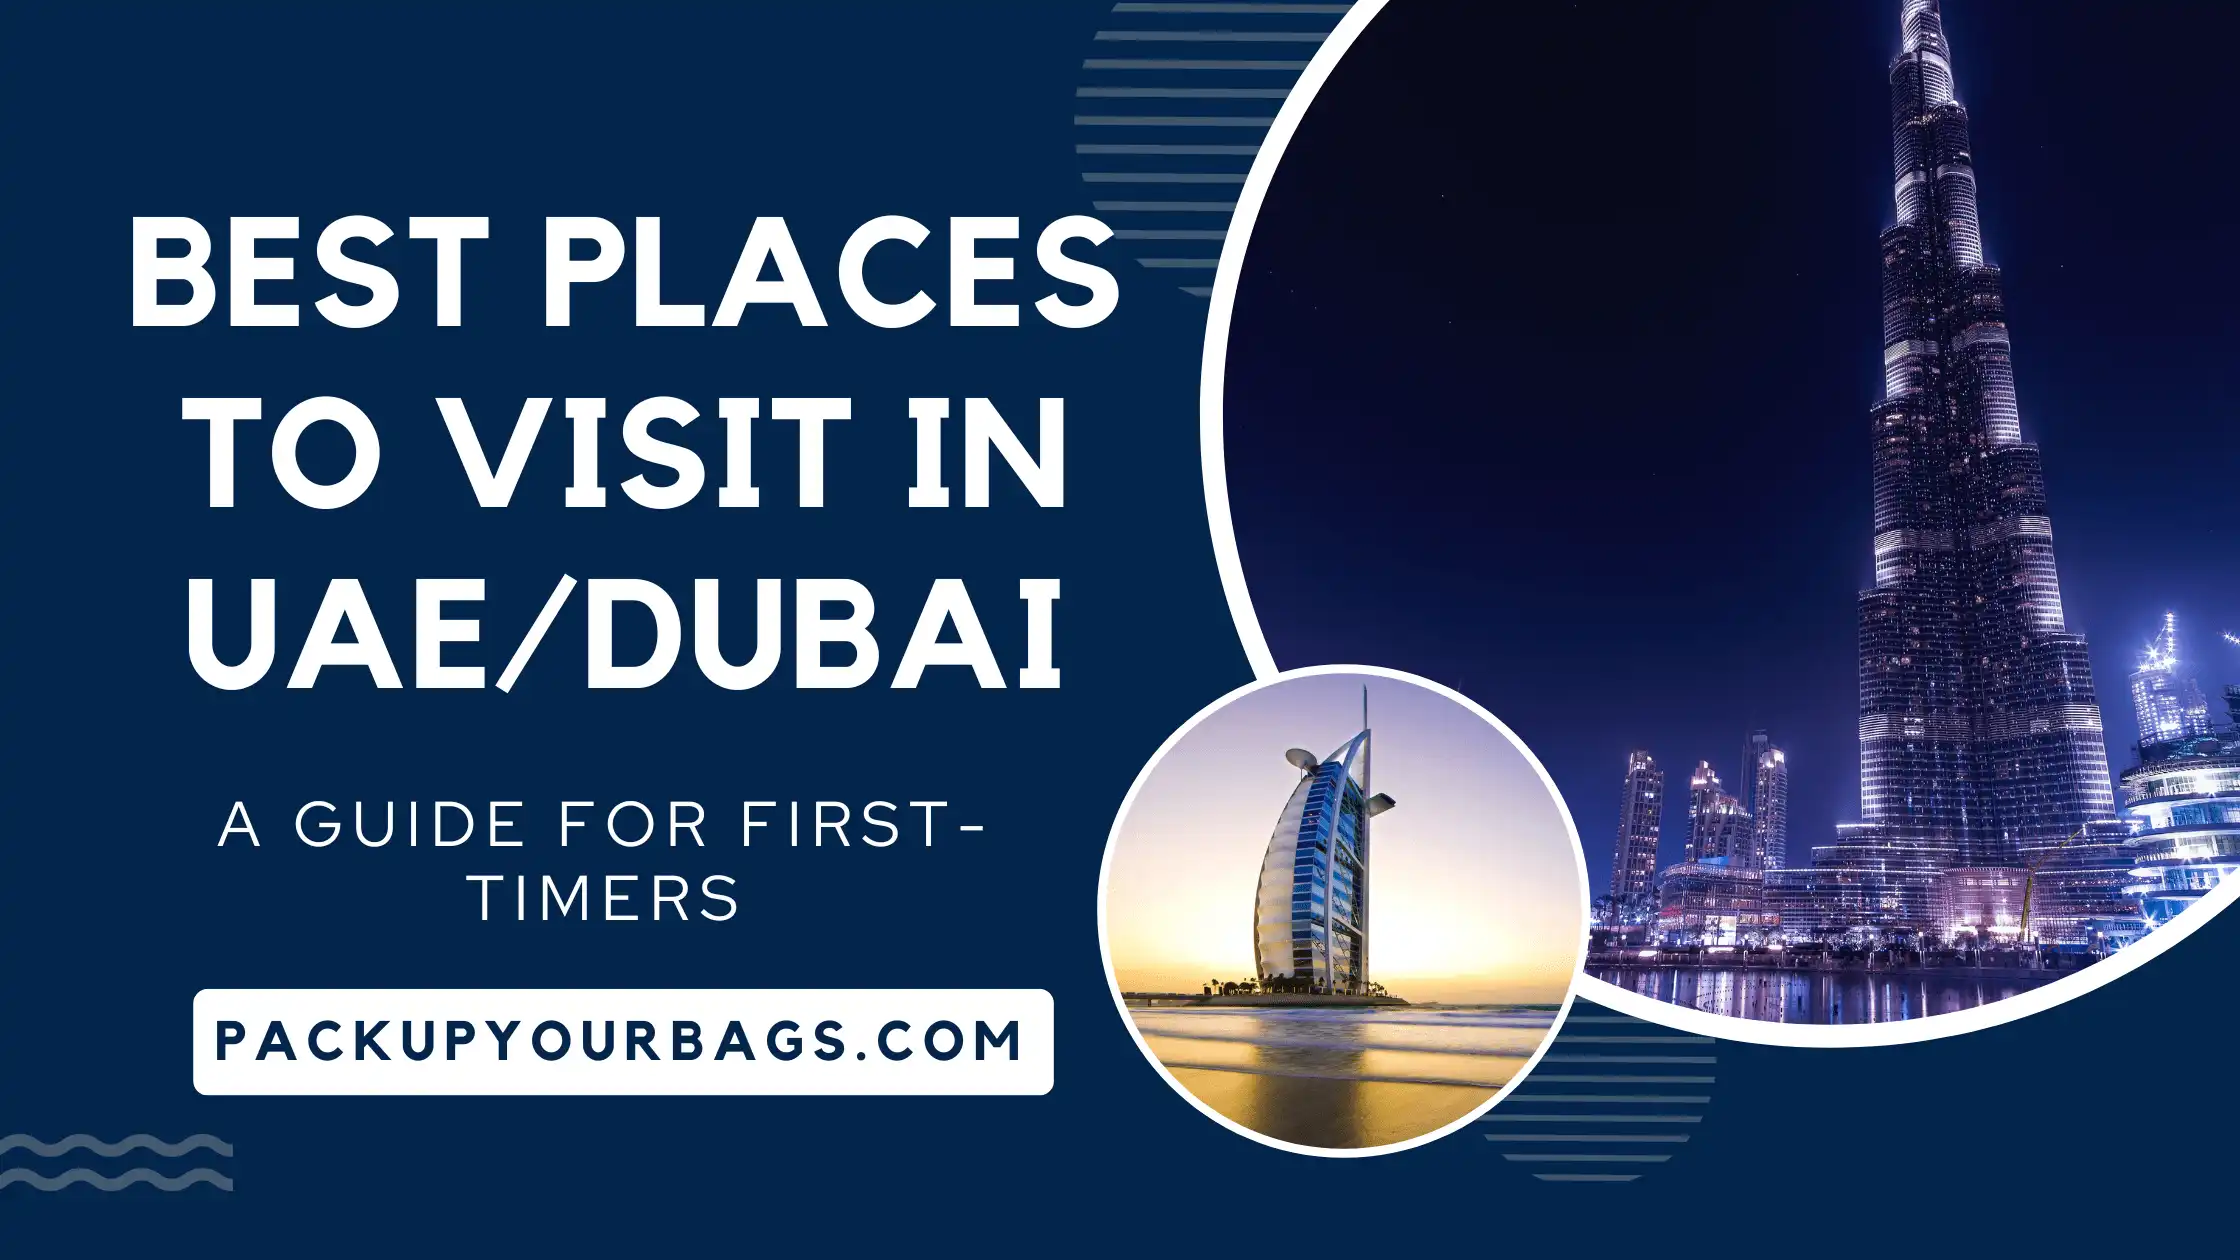 Best Places To Visit In UAE/Dubai